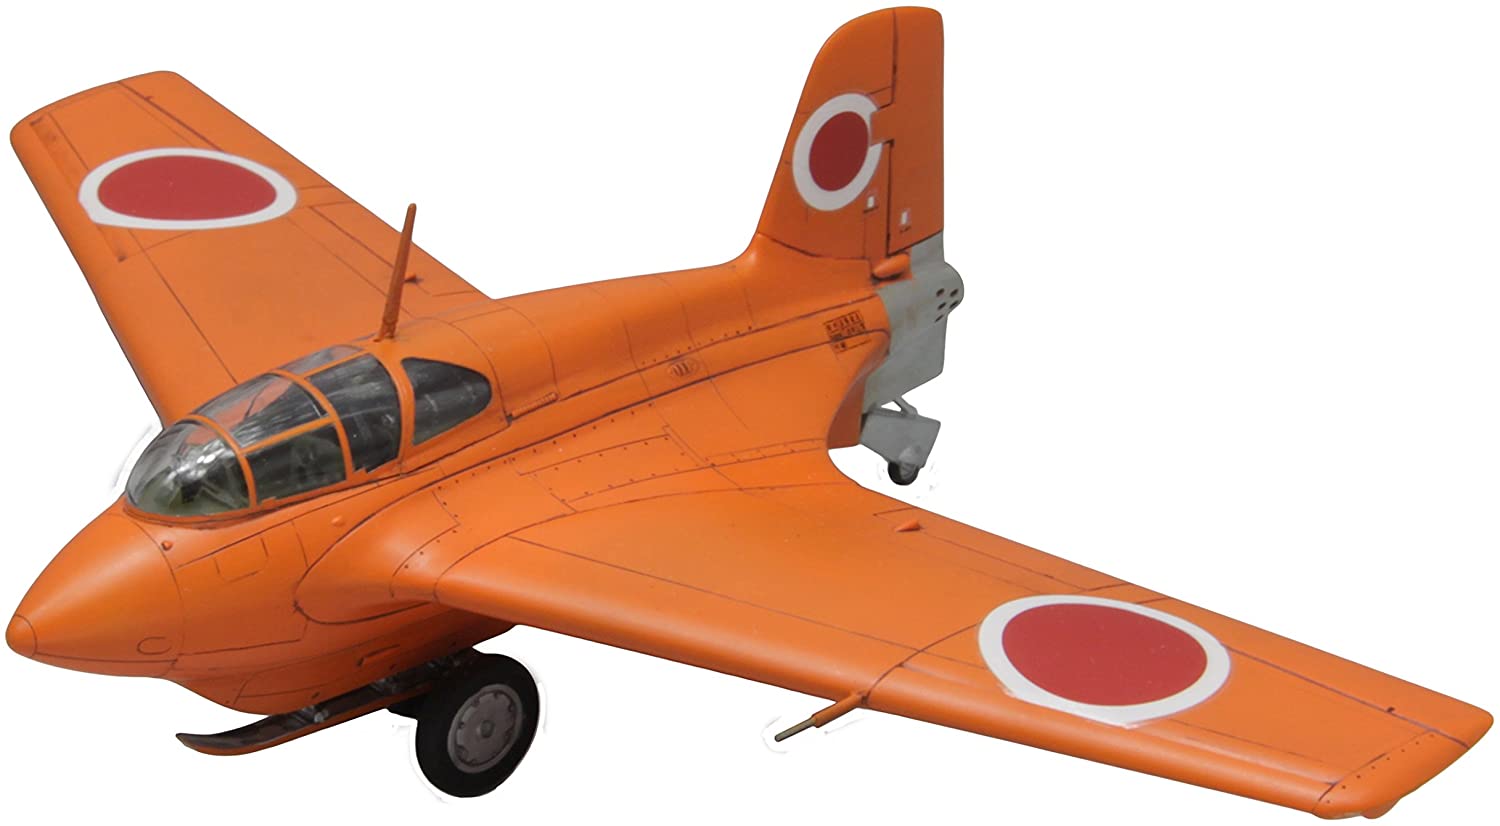 ファインモールド 1/48 日本海軍 局地戦闘機 試製秋水 プラモデル FB19